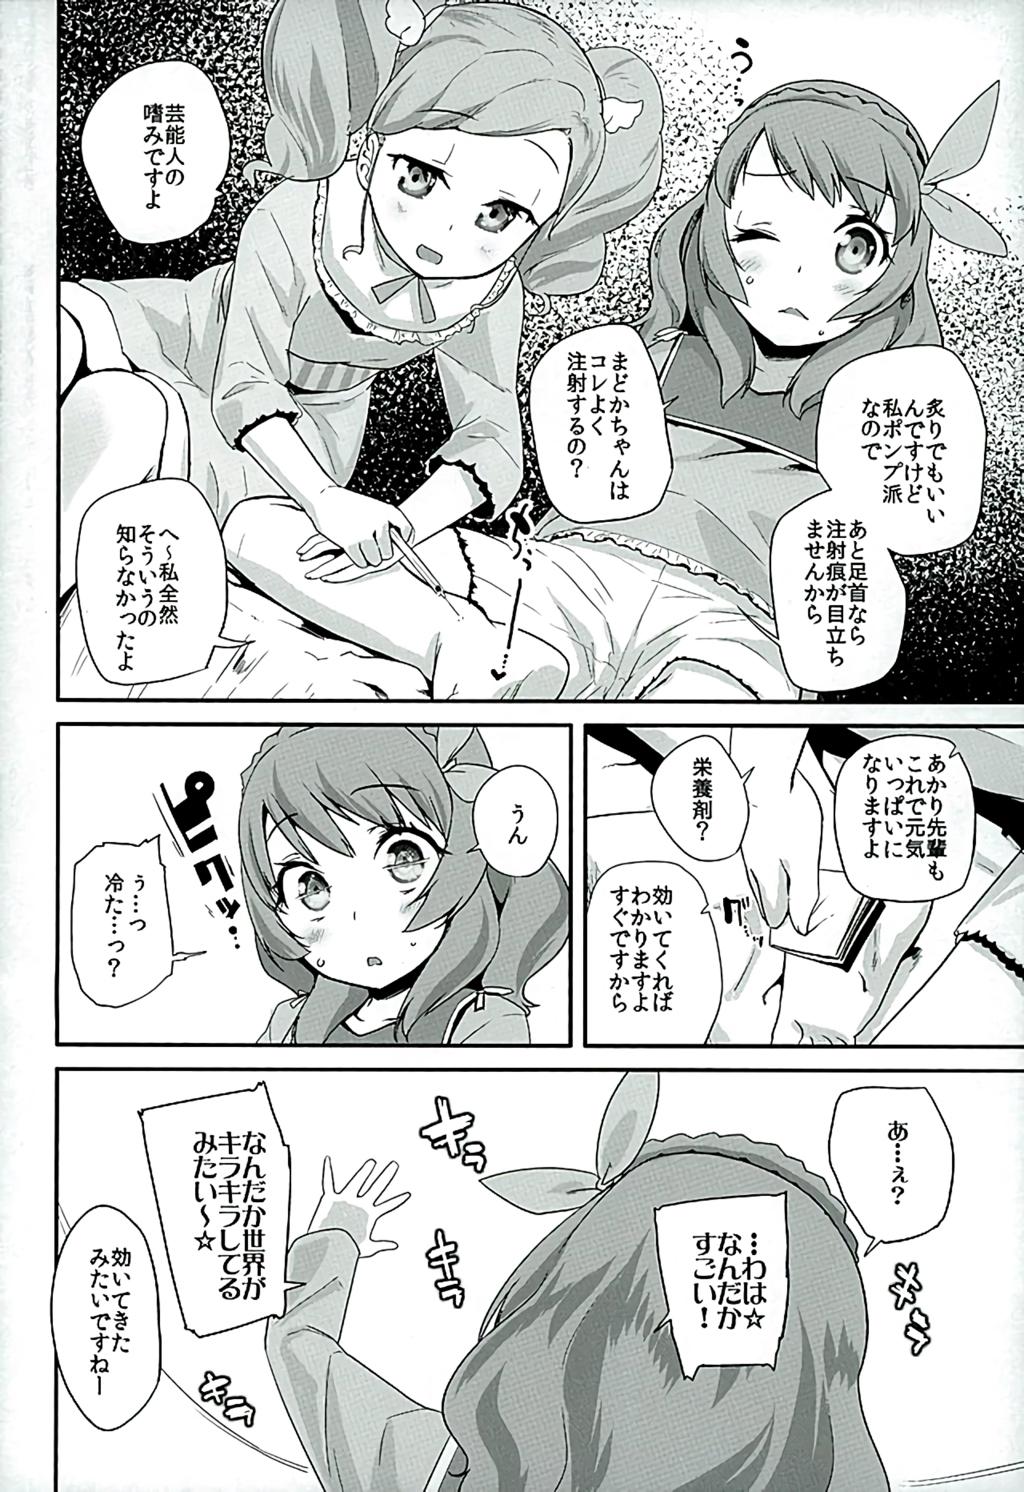 Gape Tri Tri Trips! - Aikatsu Kitchen - Page 5